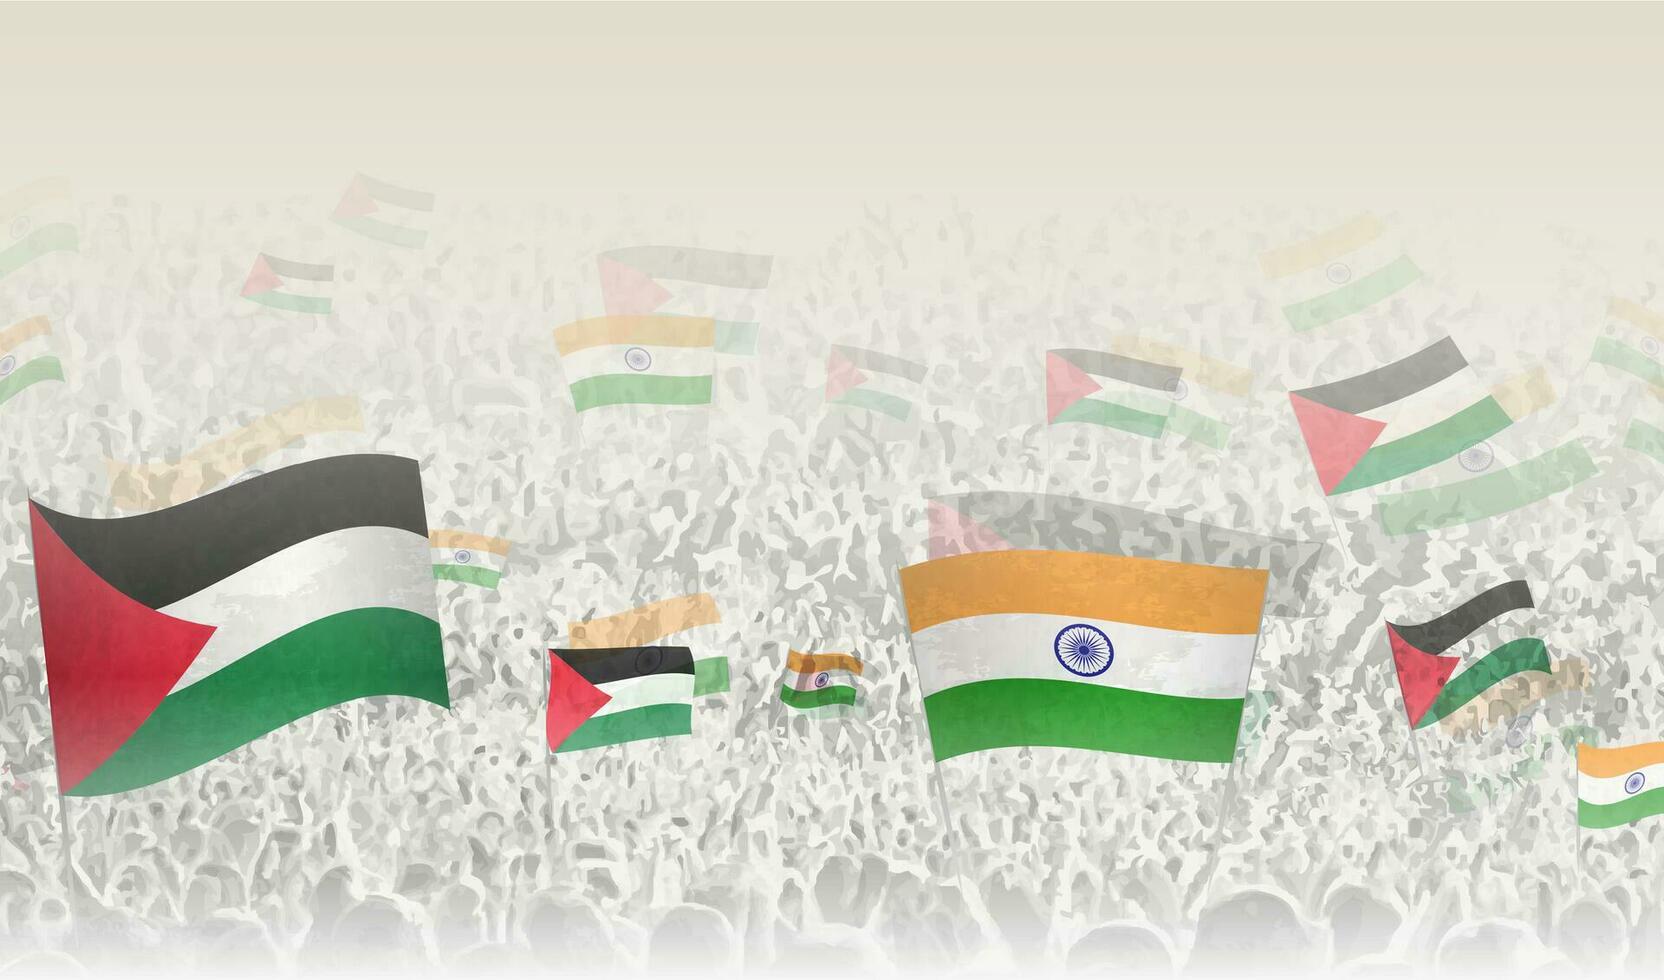 Palestina y India banderas en un multitud de aplausos gente. vector